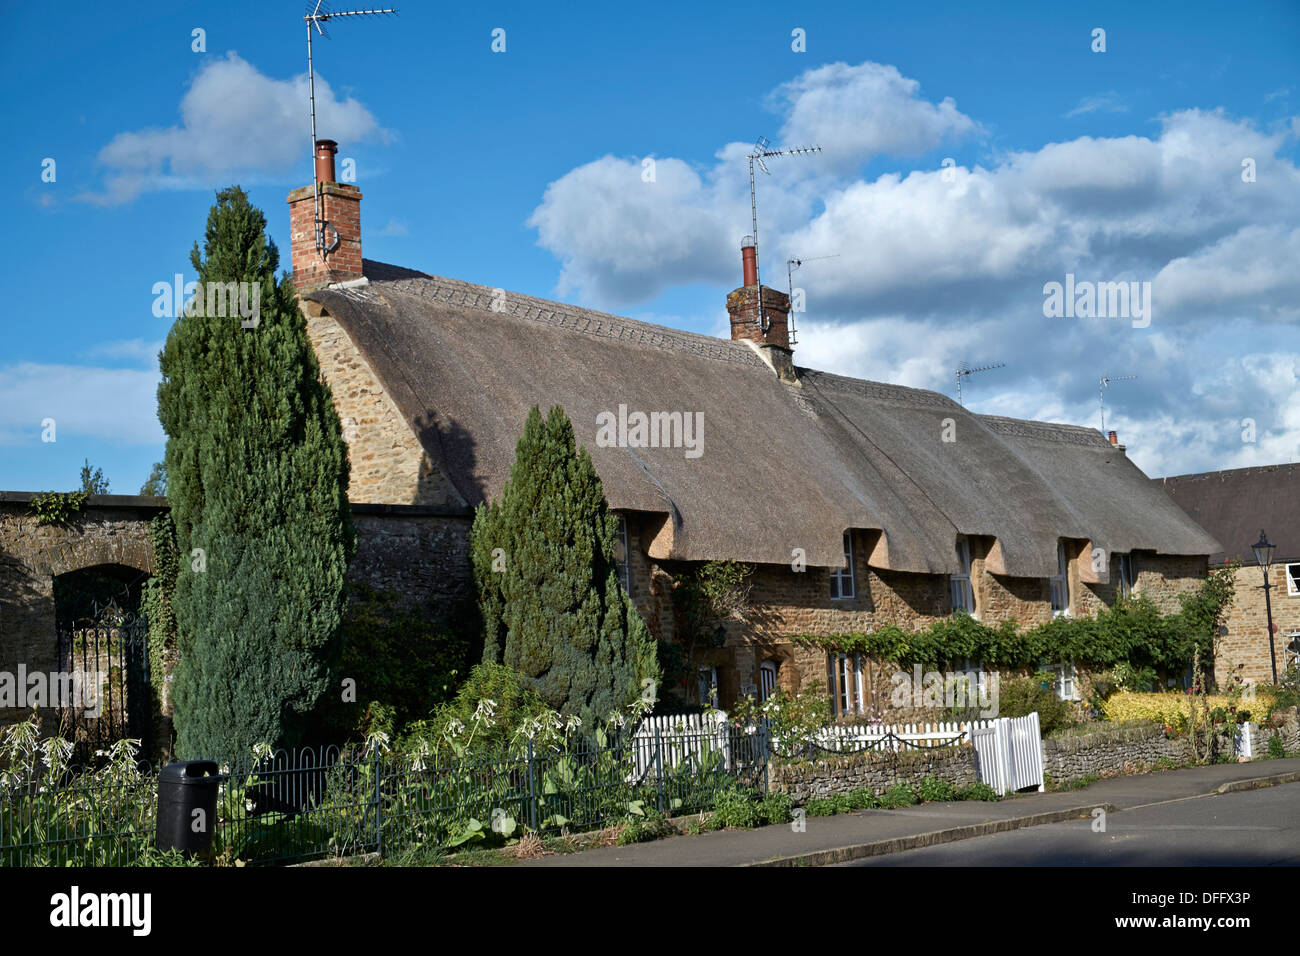 Reetgedeckte Hütte Großbritannien. Malerische Reihe von Cotswold-Steinhütten mit Strohdach, geschmückt mit einem Reetdach von Norfolk Reed. Kings Sutton, Banbury Oxfordshire Stockfoto